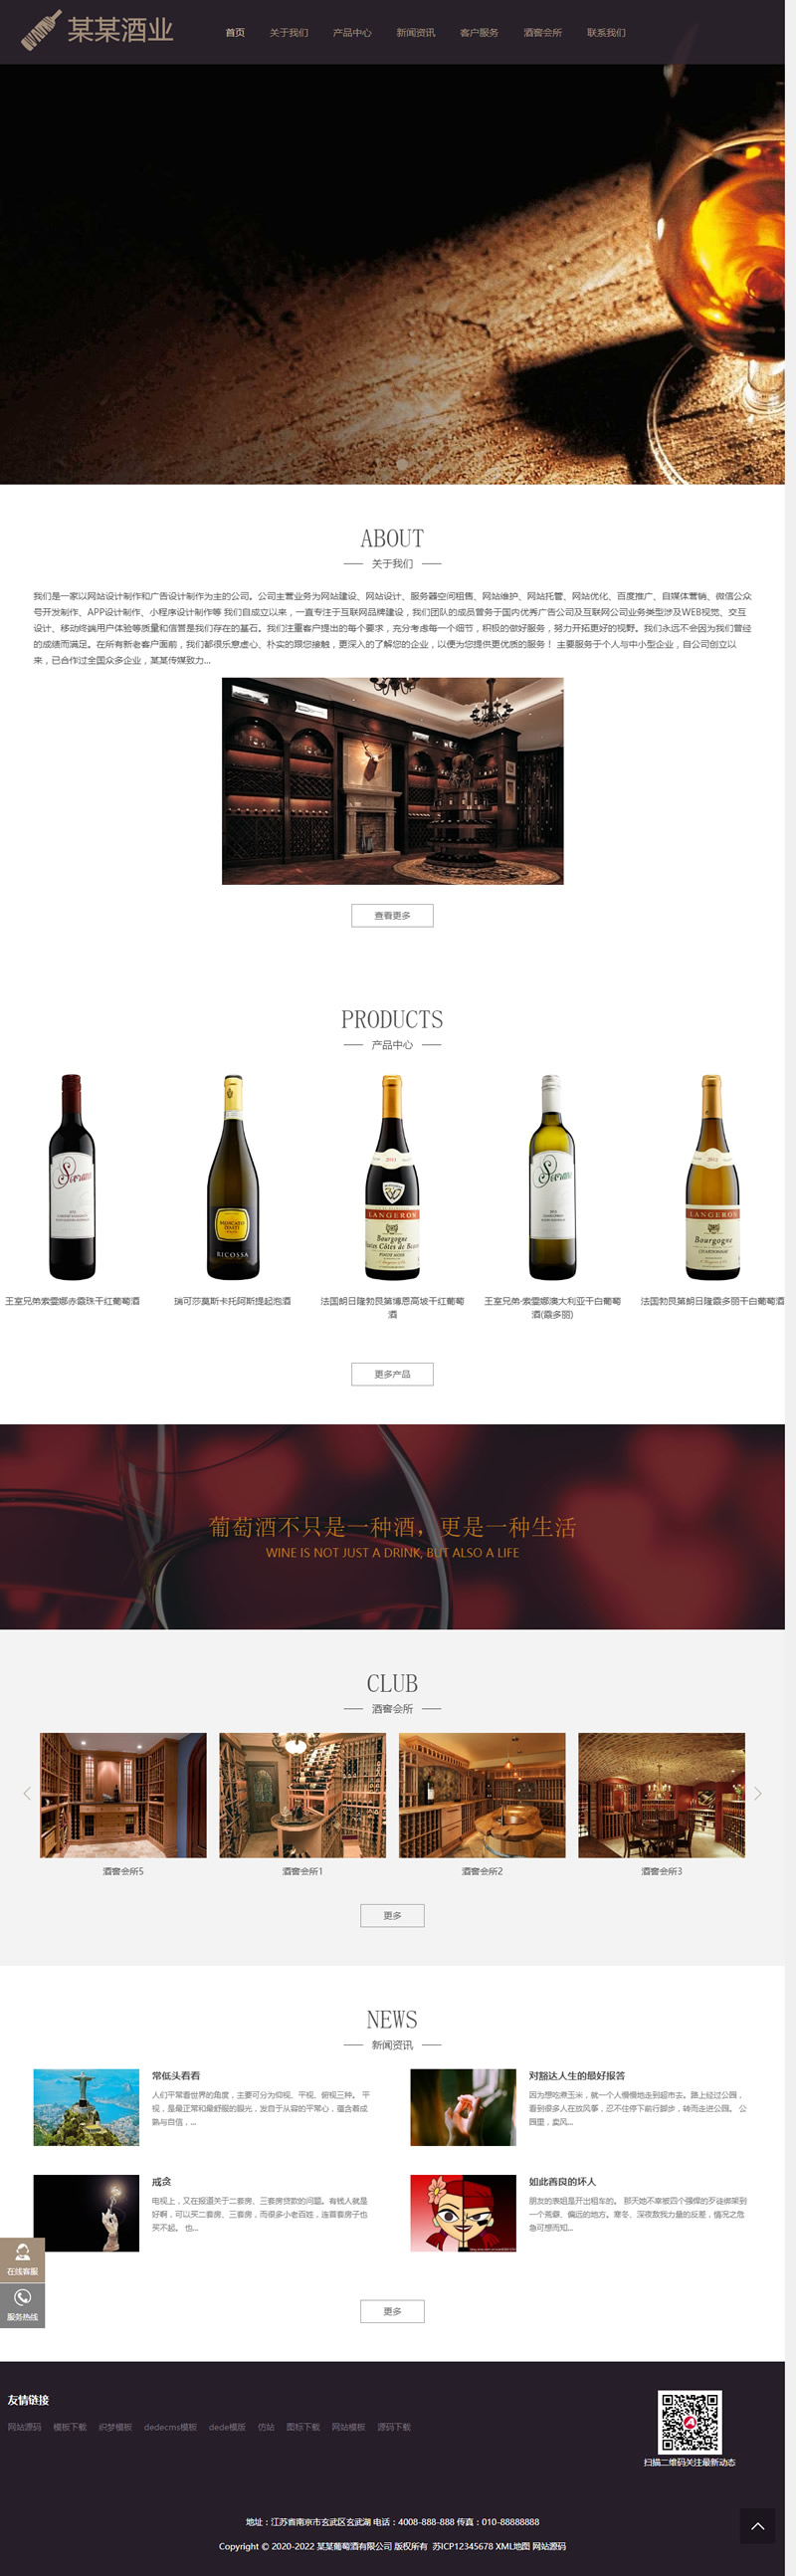 HTML5葡萄酒酒业网站织梦模板 响应式高端藏酒酒业酒窖网站源码 (自适应手机版)